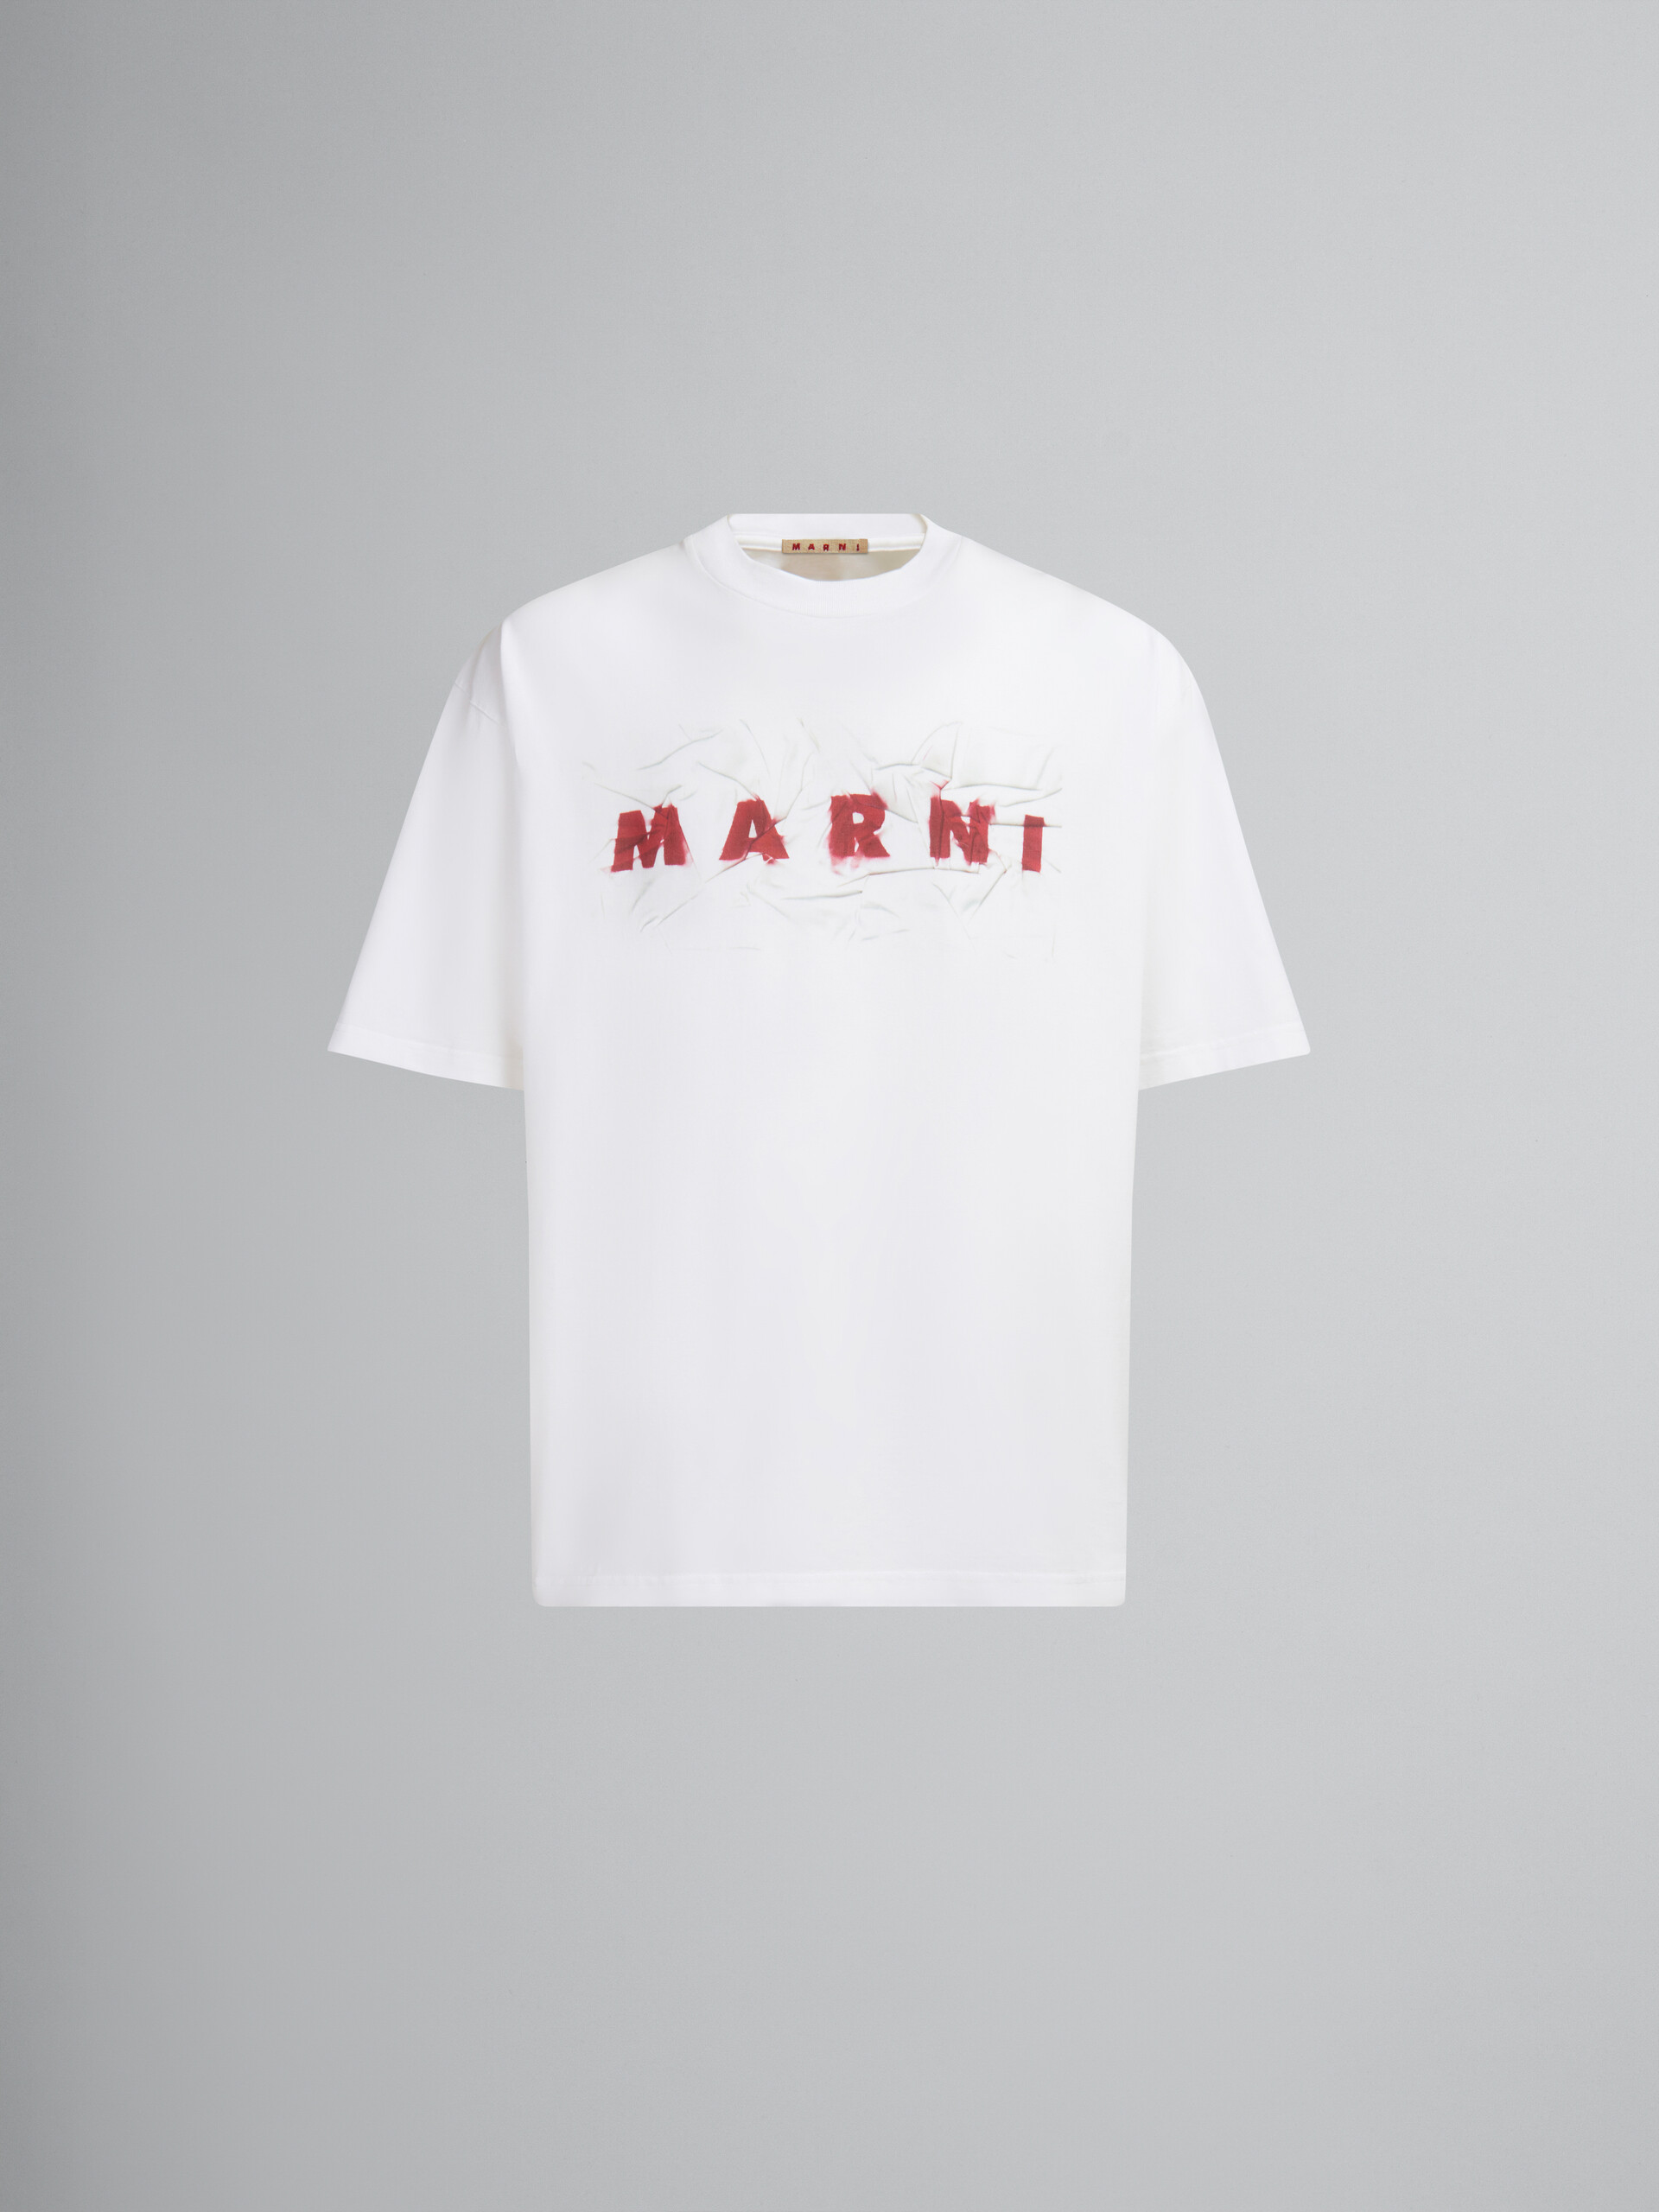 T-shirt en coton biologique blanc avec logo Marni froissé - T-shirts - Image 1